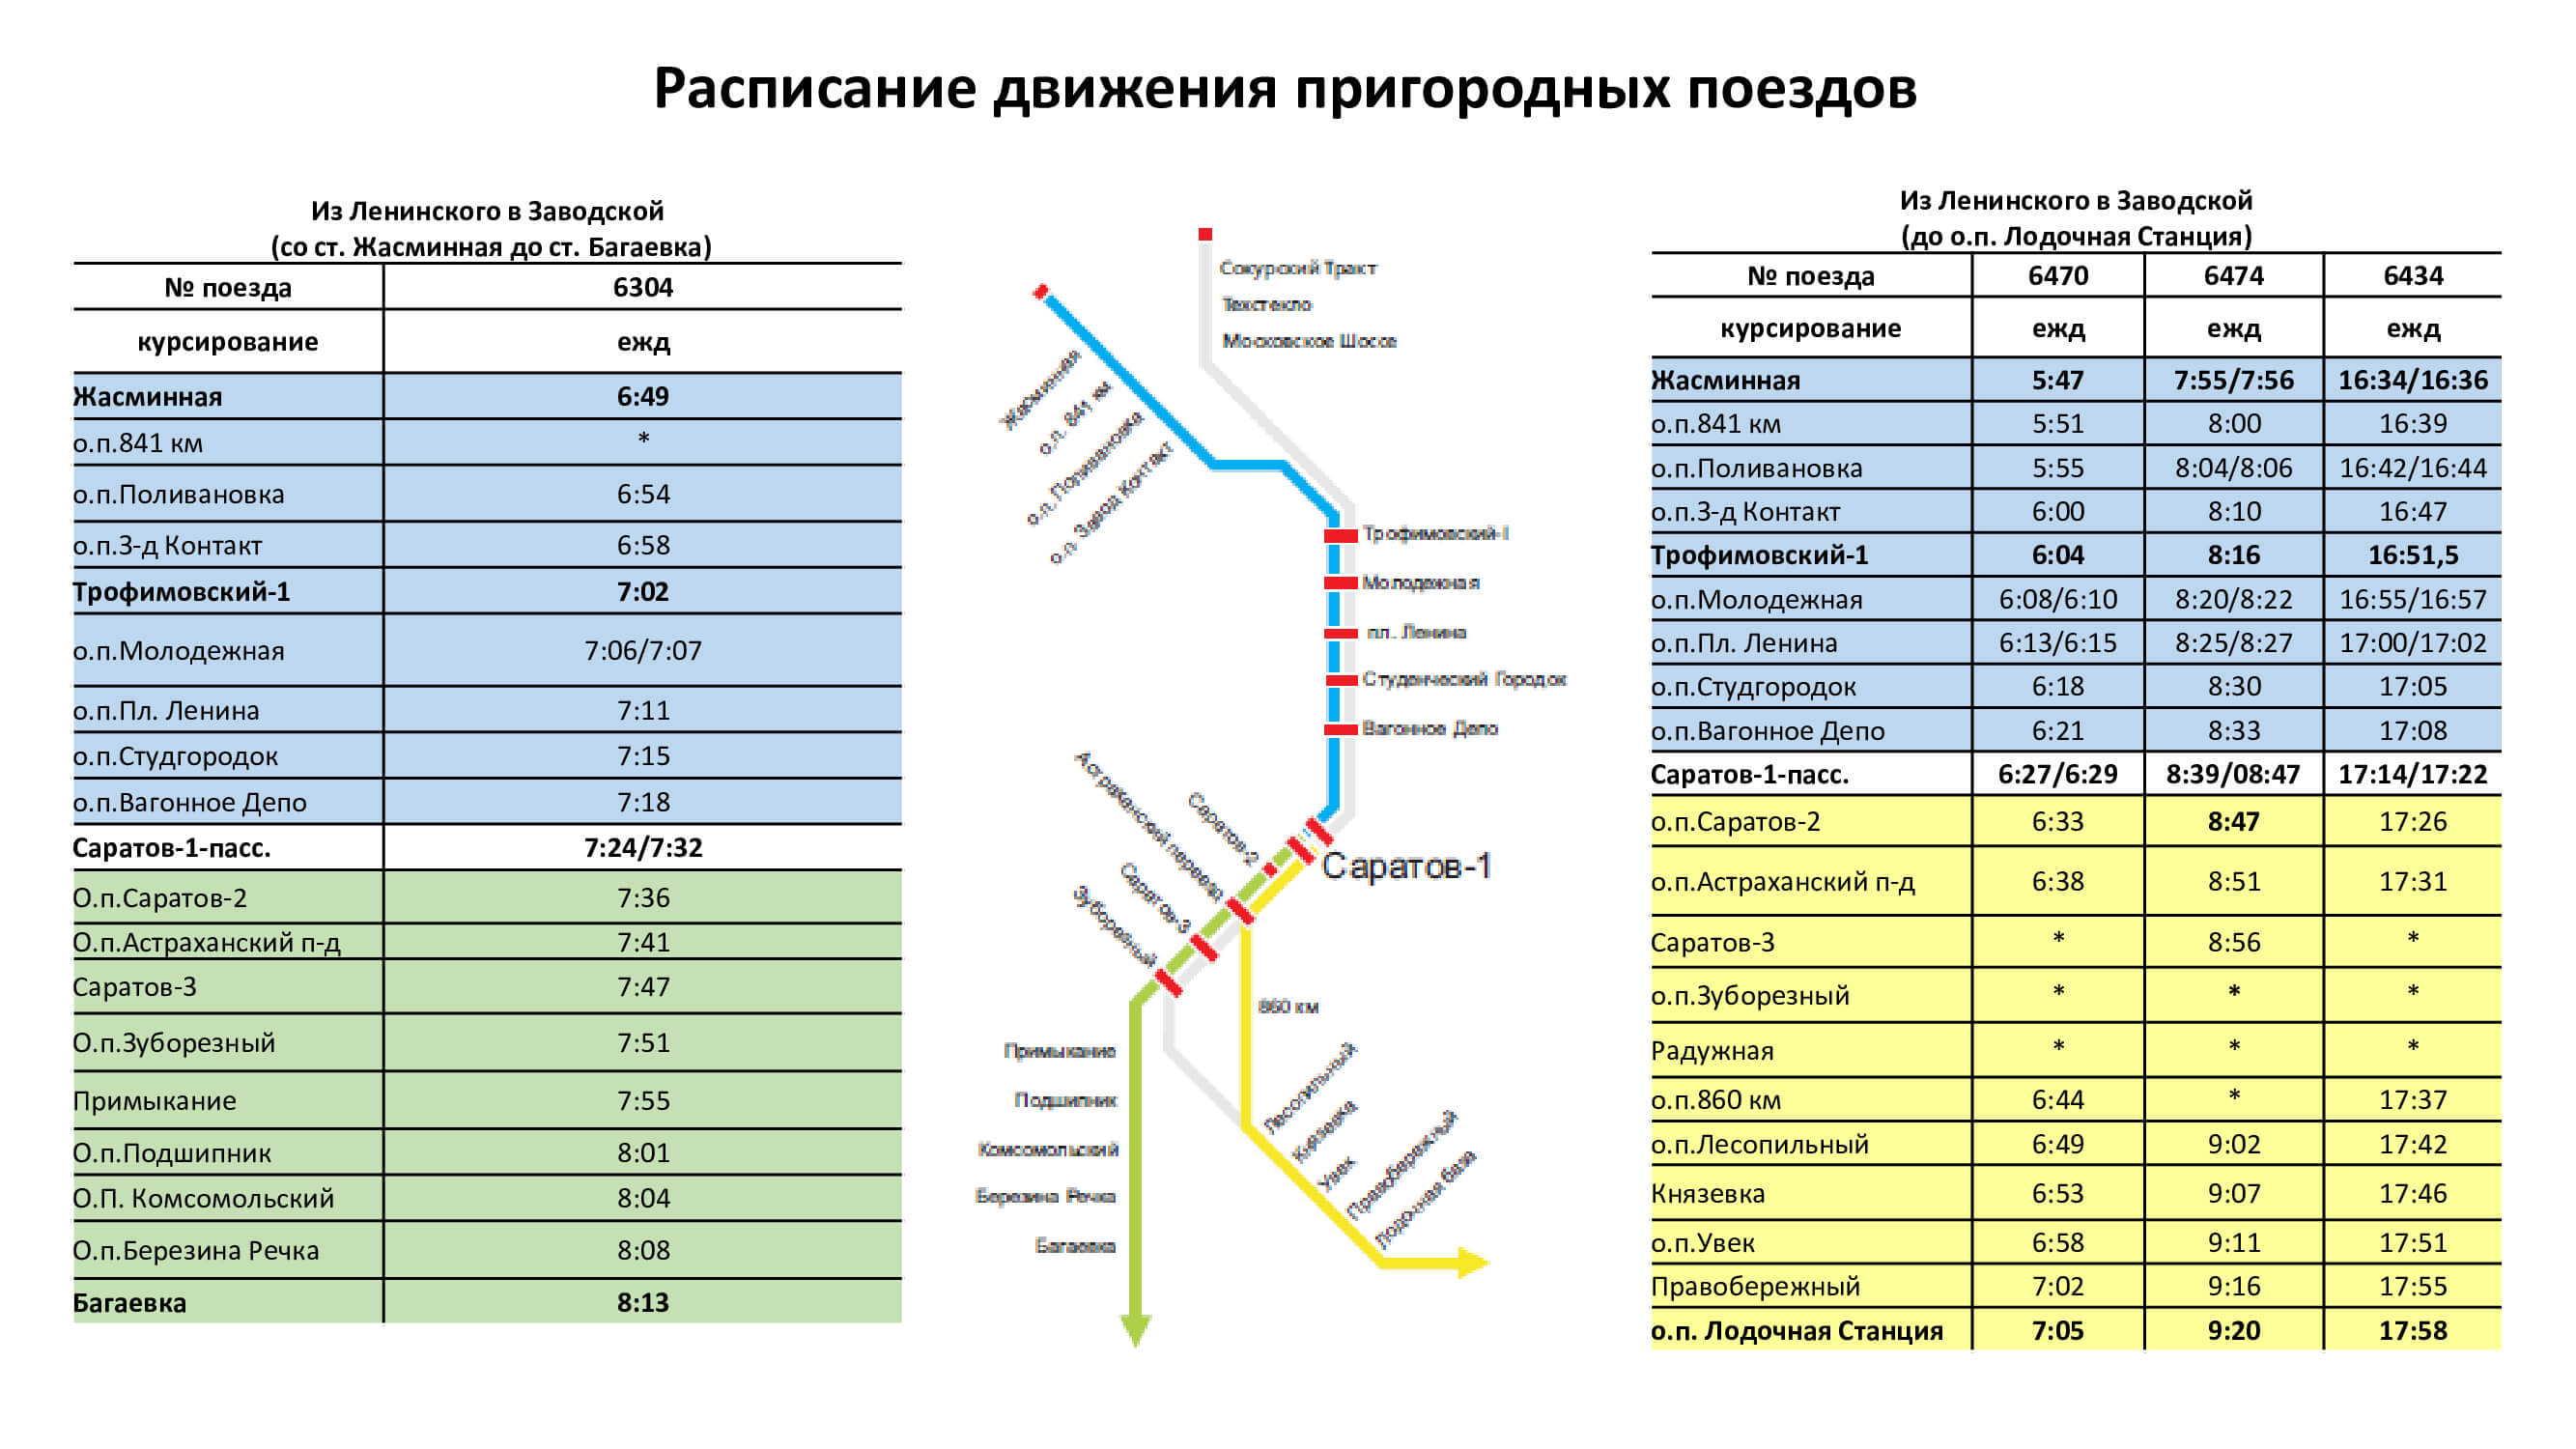 gorodskaja cherta 1. - Расписание движения пригородных поездов в черте города